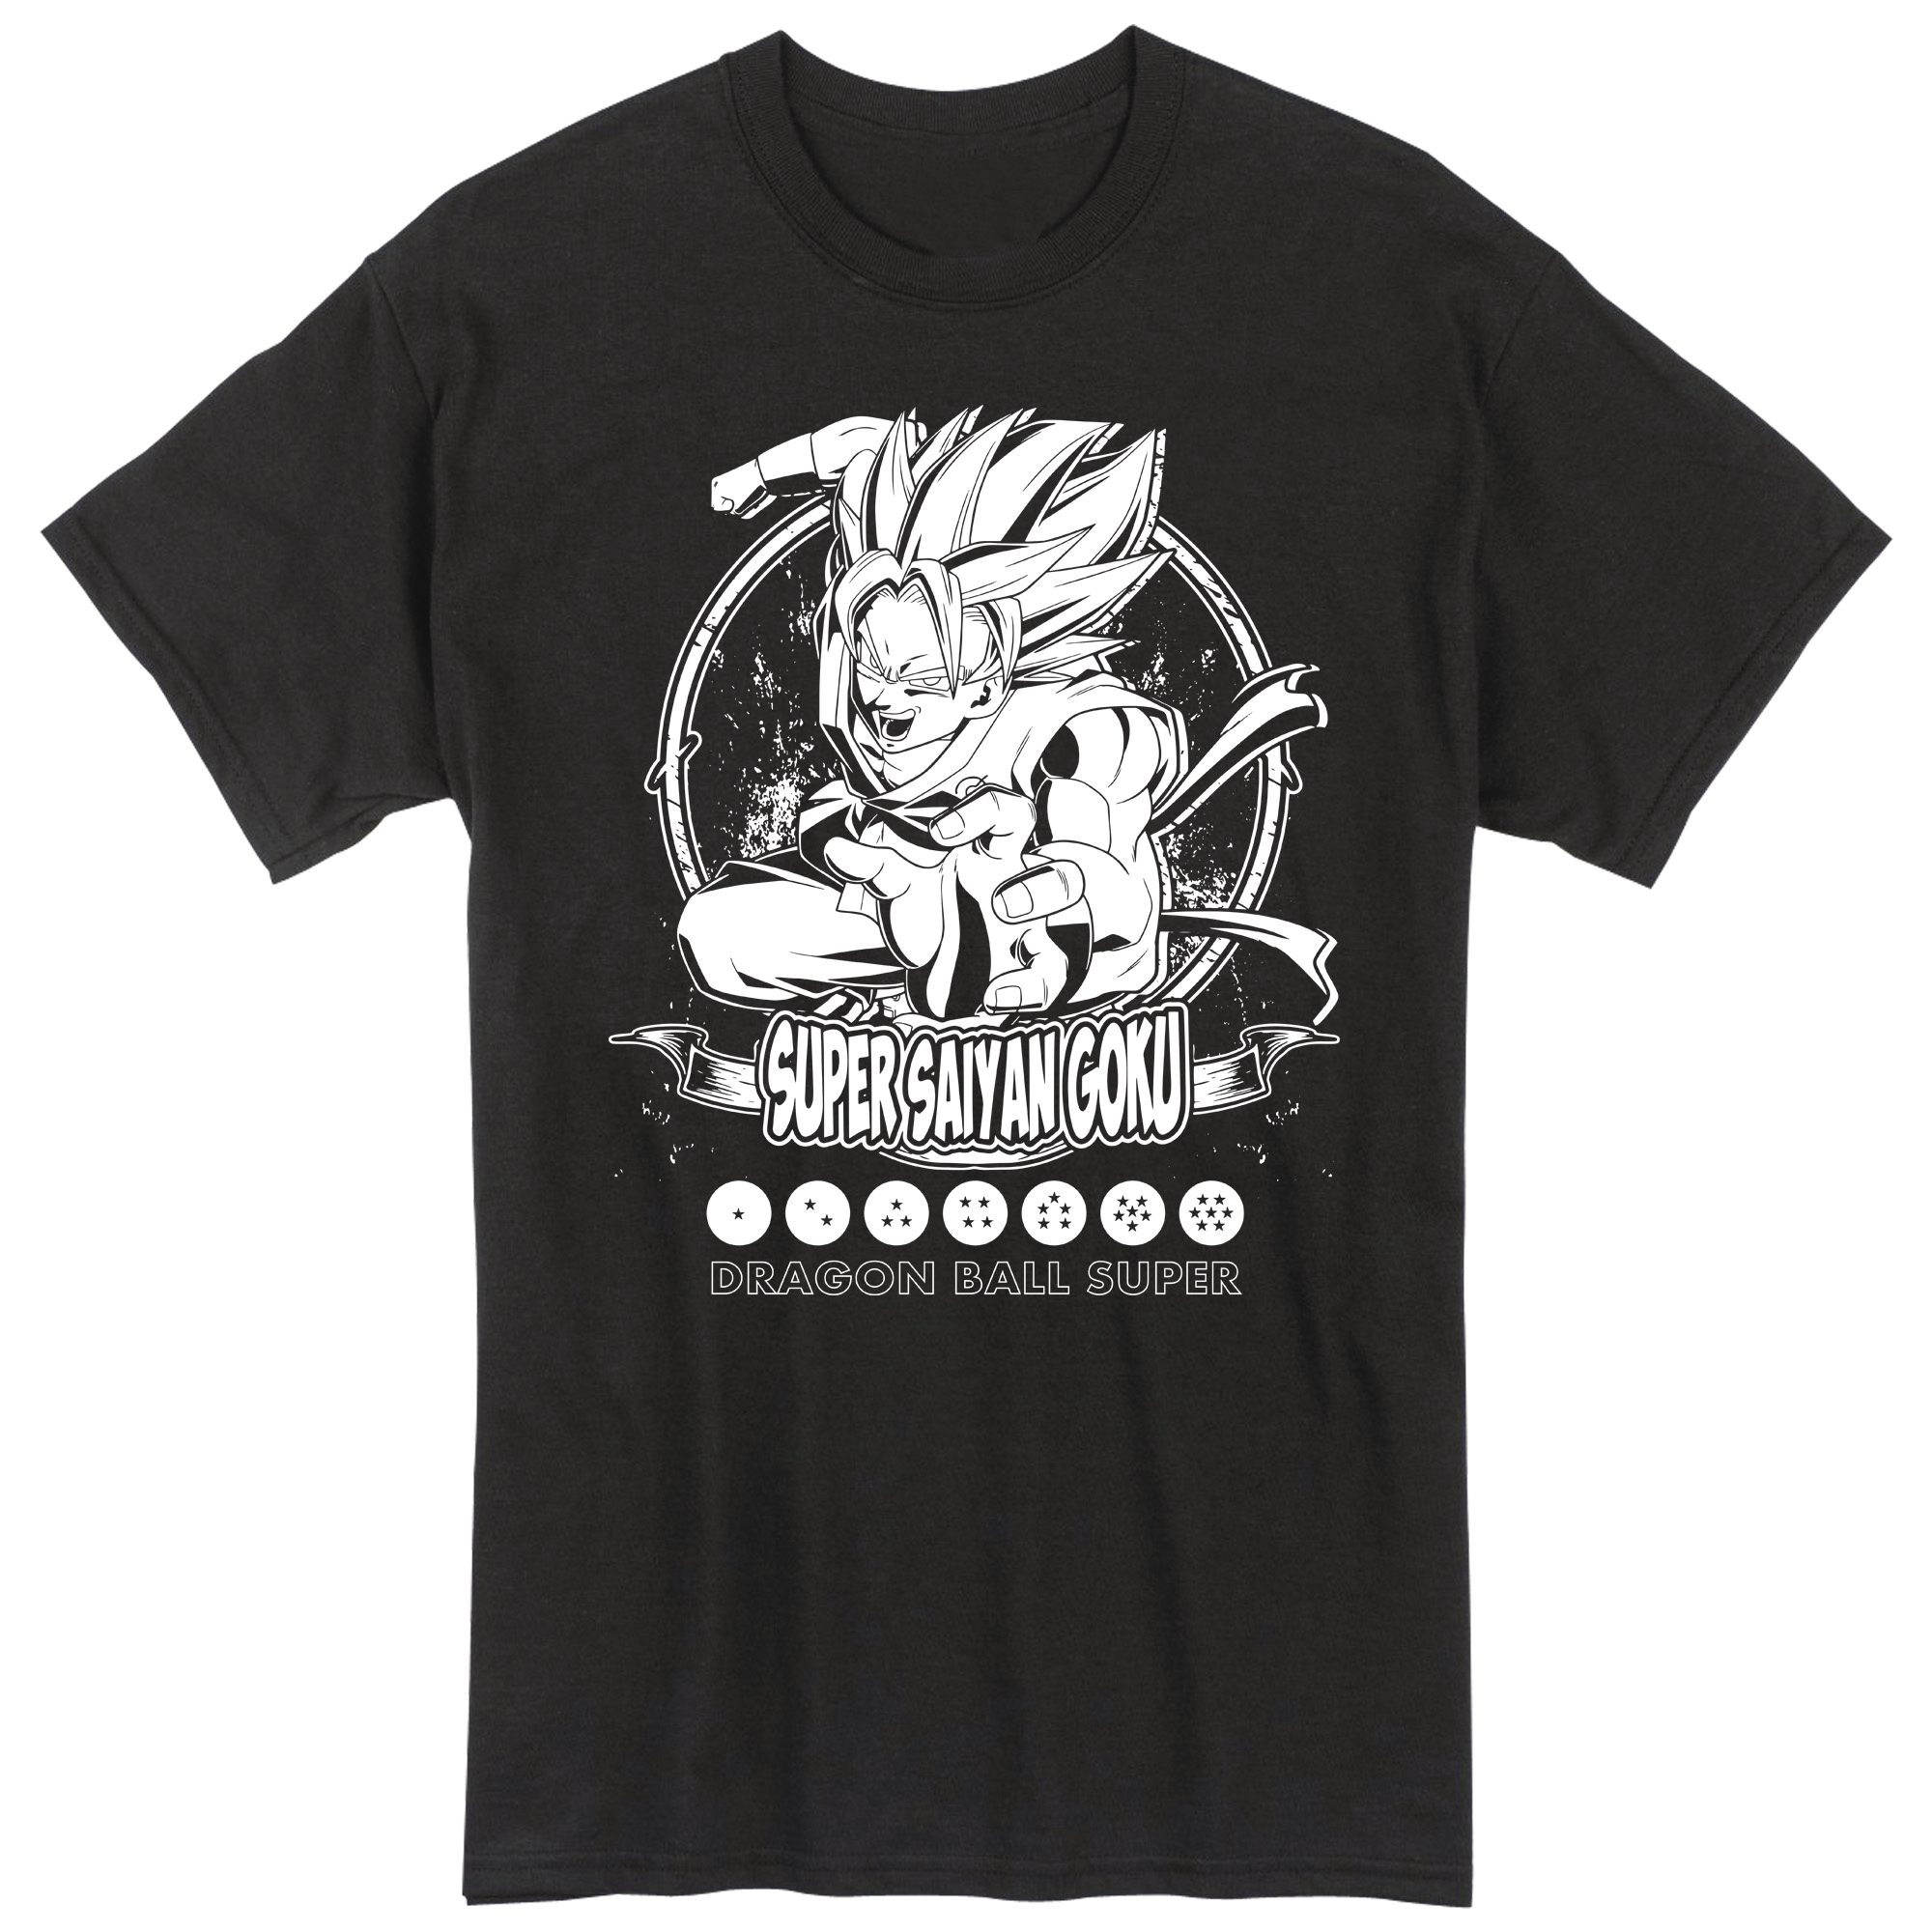 Dragon Ball Super Ss Goku Black T-Shirt XL